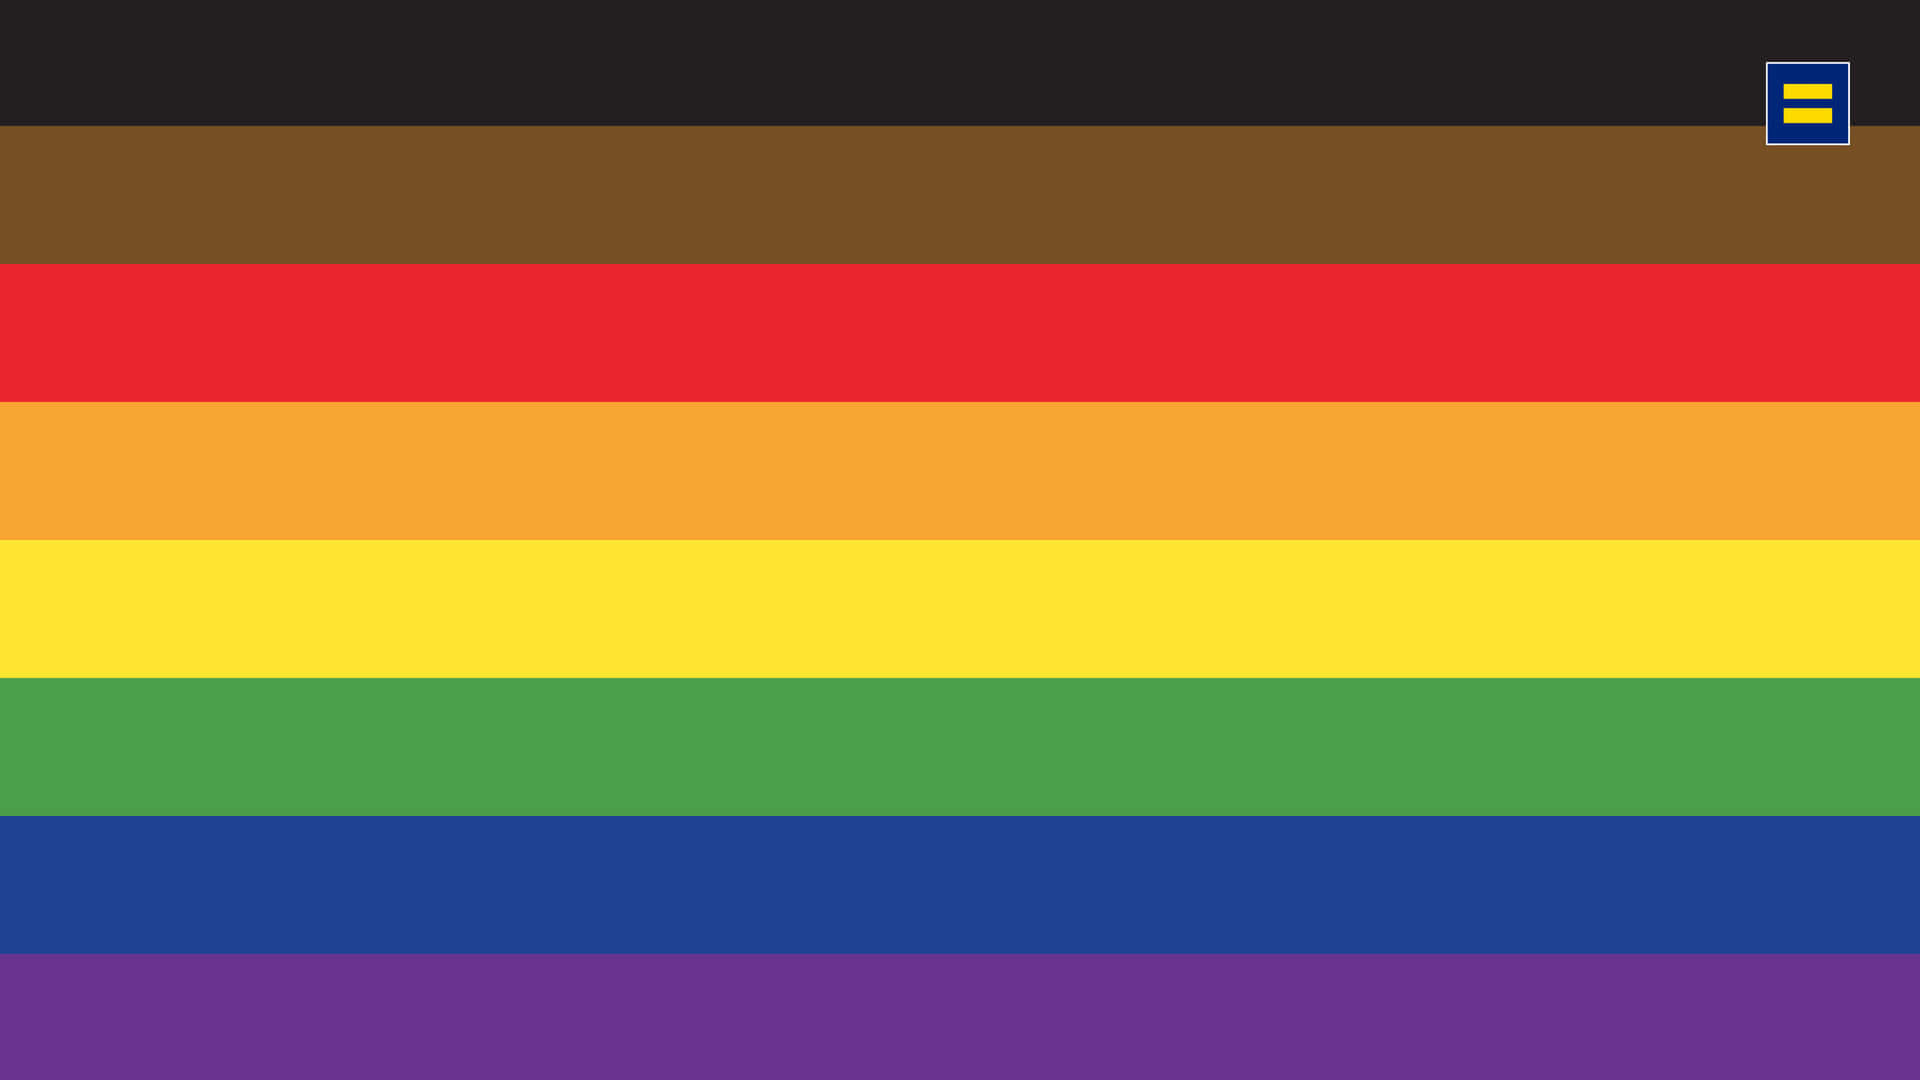 Visdin Stolthed Året Rundt Med Dette Smukke, Farverige Pride-flag!